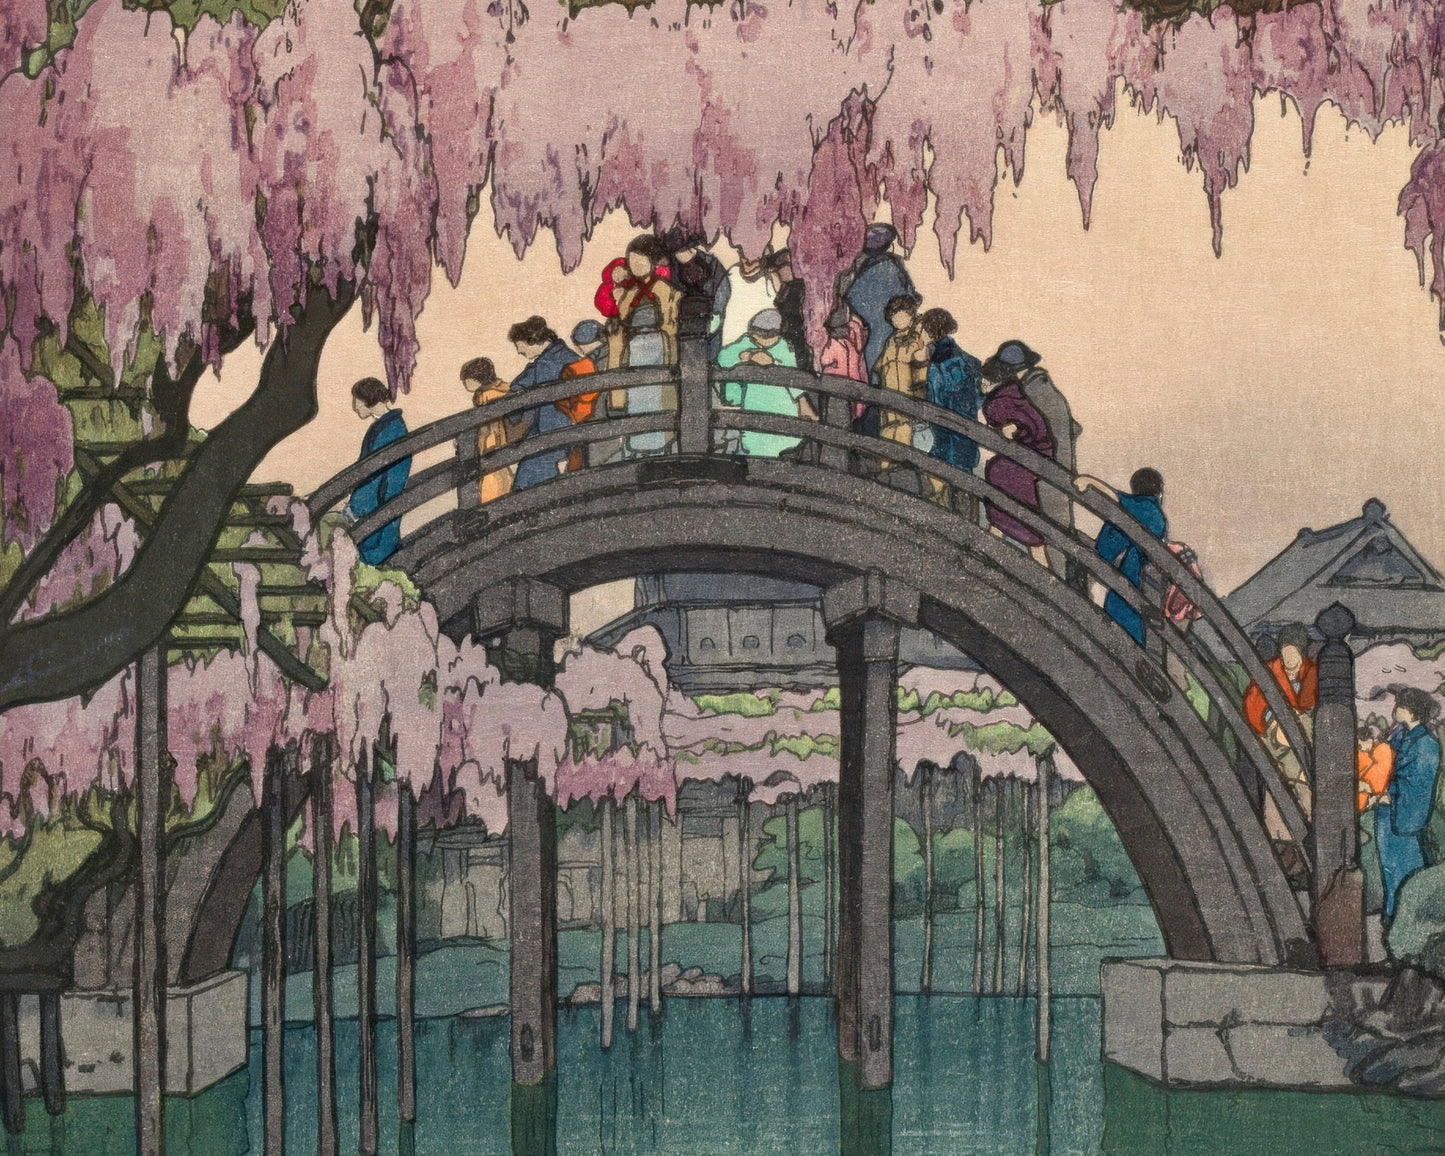 Yoshida Hiroshi "Kameido Bridge, Tokyo" (c.1927) - Mabon Gallery